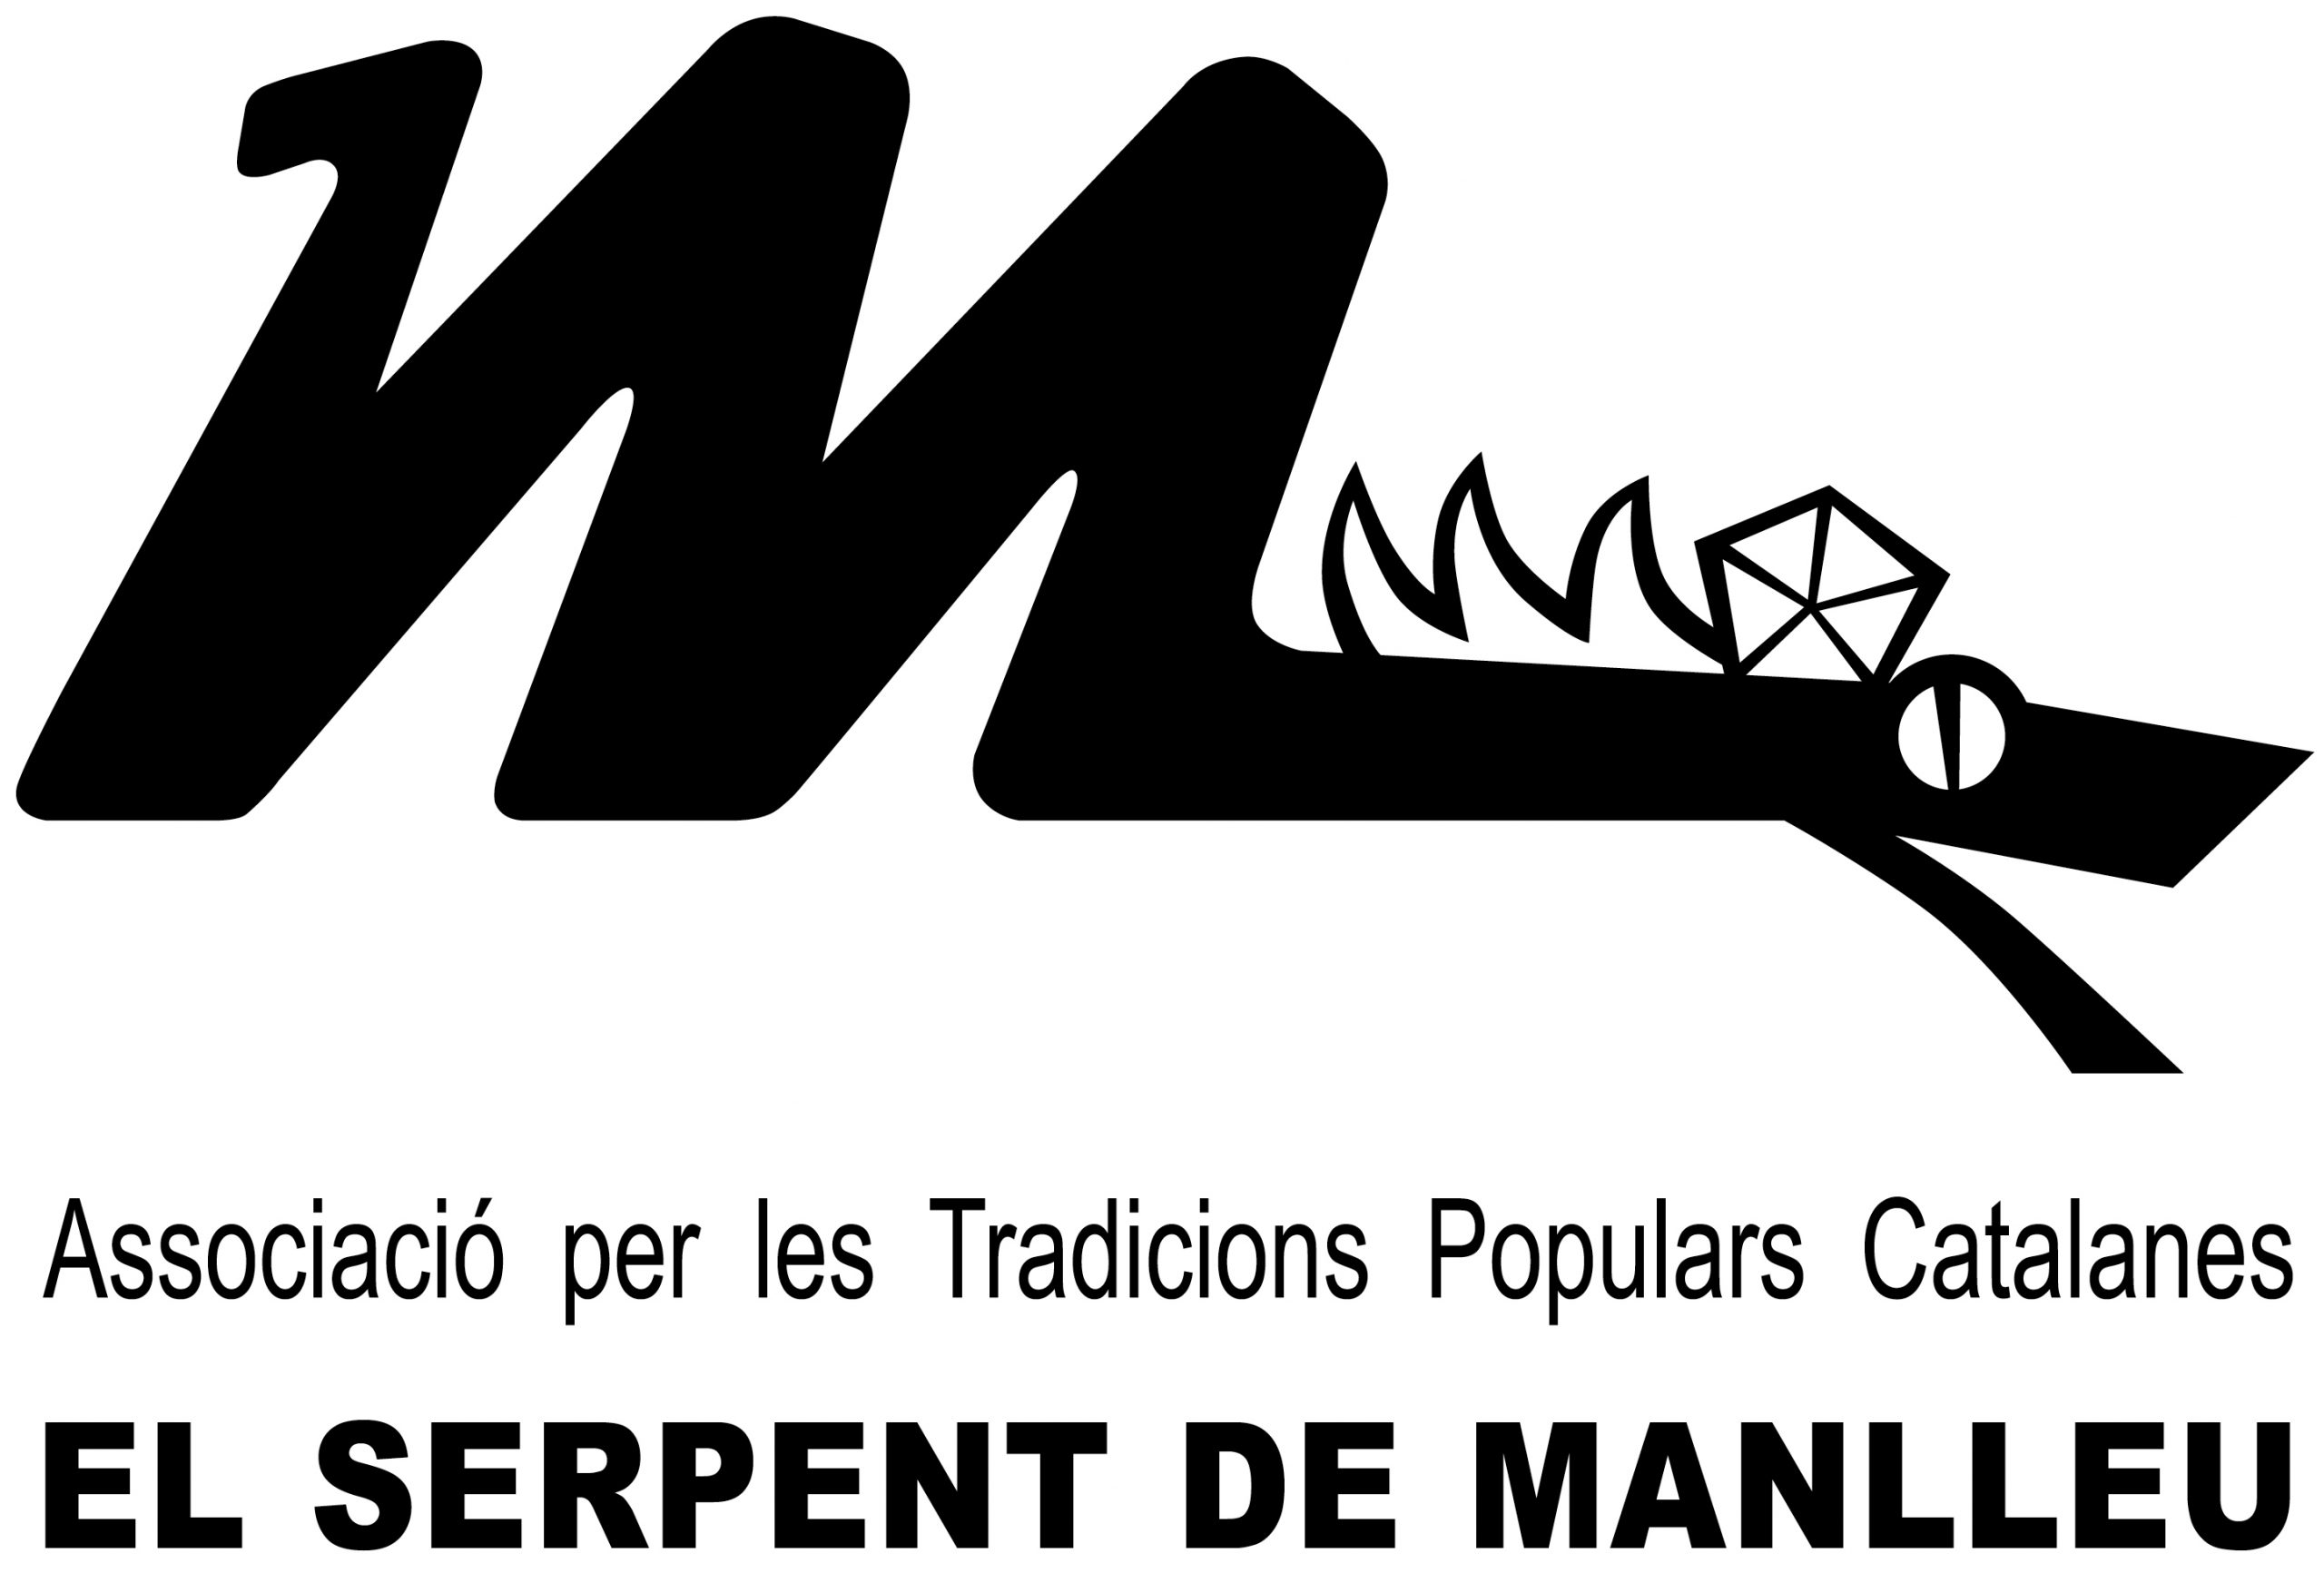 Logotip de l’entitat organitzadora de la Festa del Serpent de Manlleu